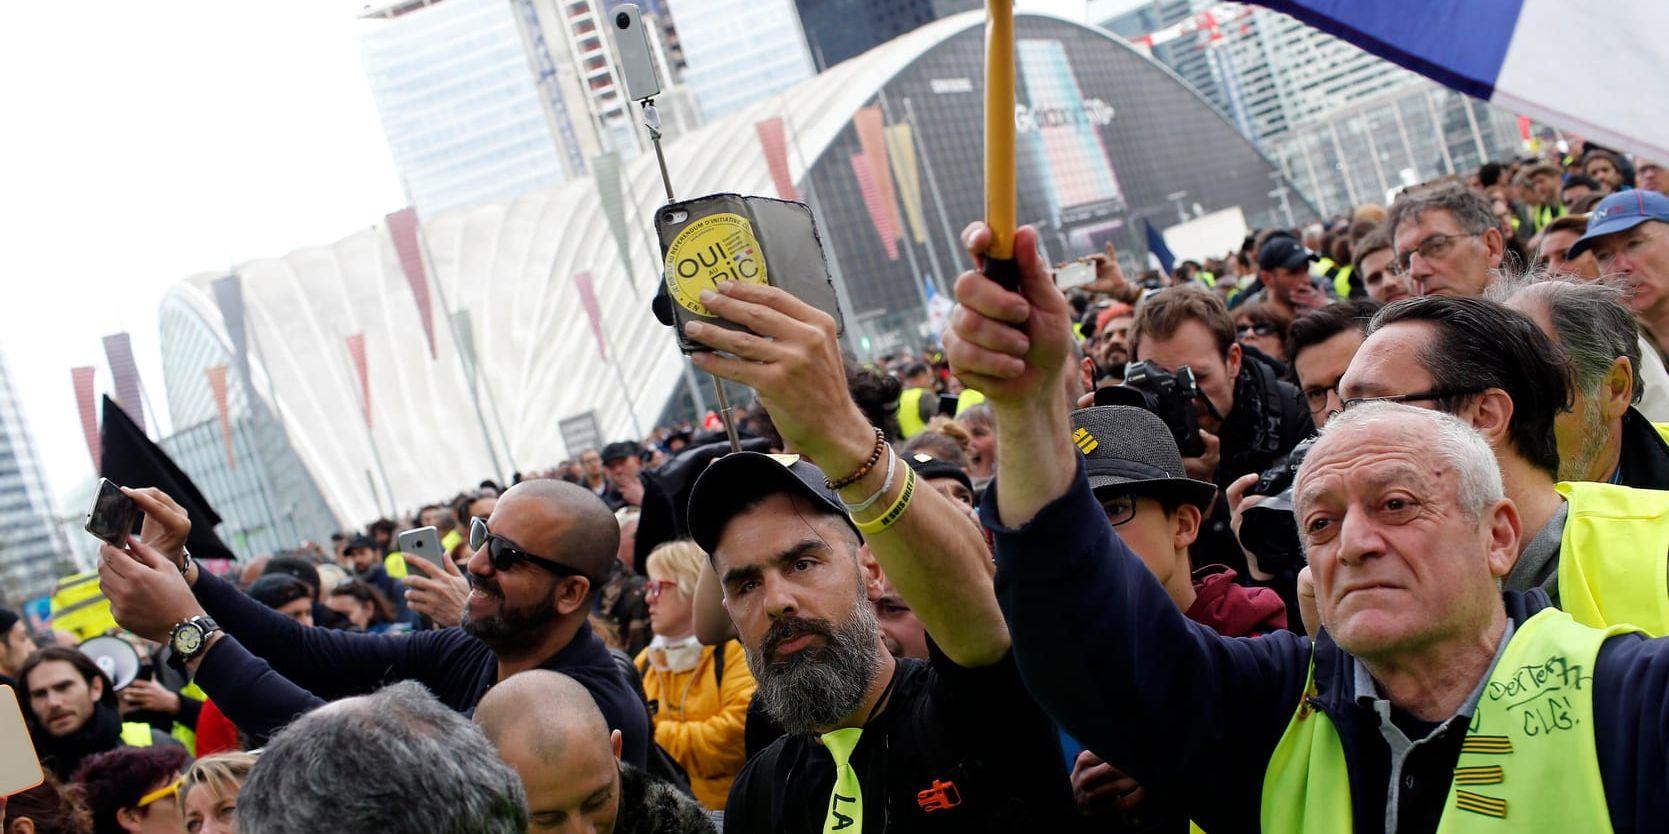 Proteströrelsen Gula västarna demonstrerade återigen i franska städer. På bilden från en av demonstrationerna i Paris syns Jerome Rodriguez (i mitten) som är en av rörelsens mer framträdande personer.